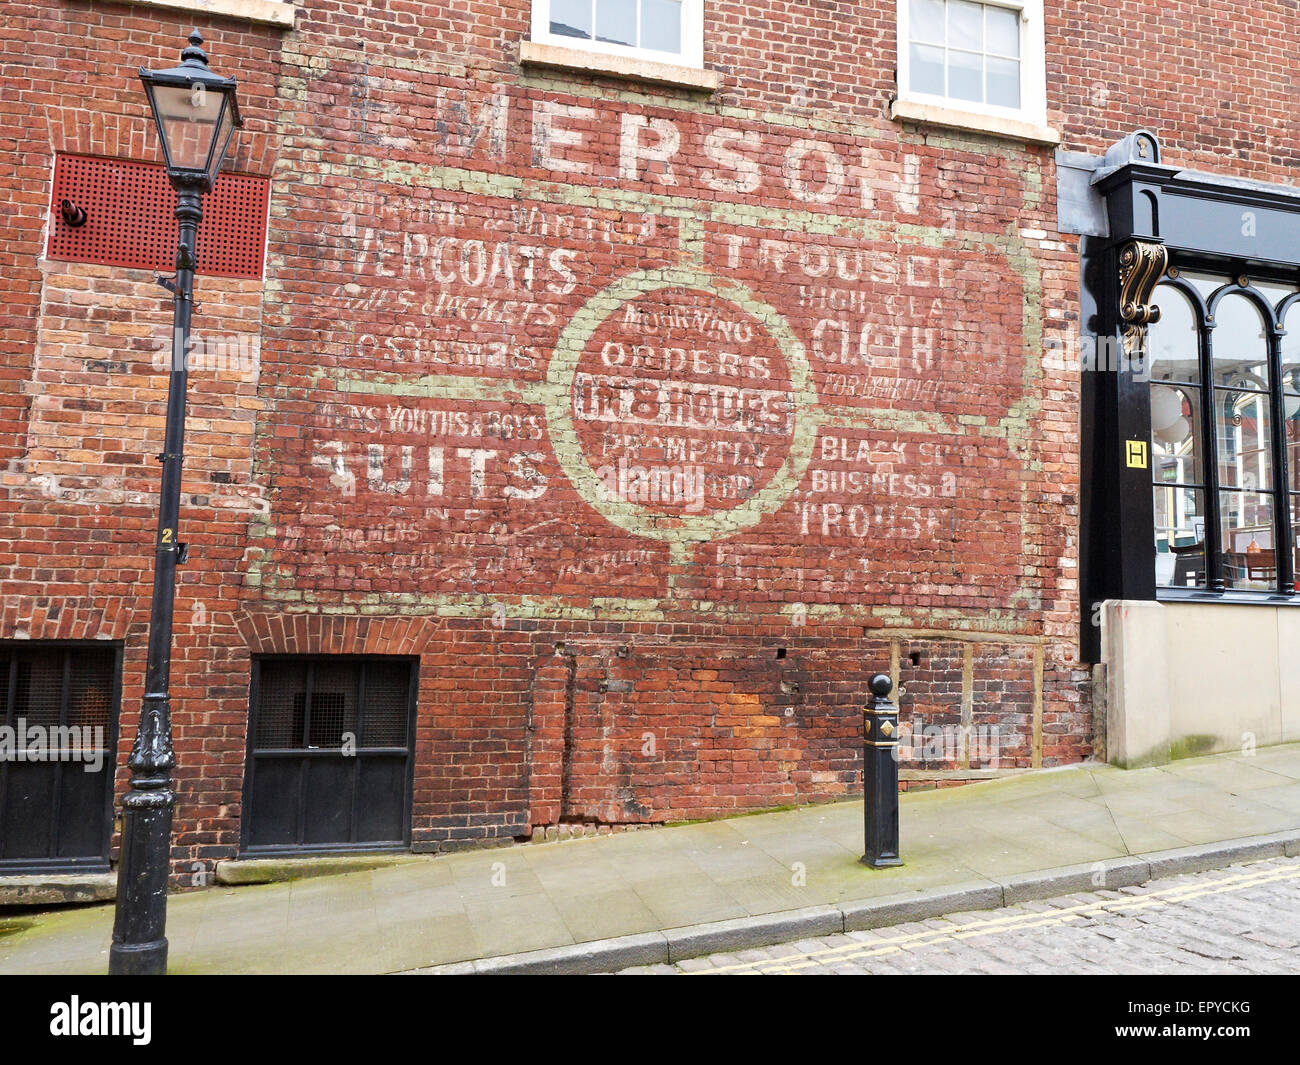 Altmodische Anzeige an Außenwand Shop in Stockport, UK Stockfoto